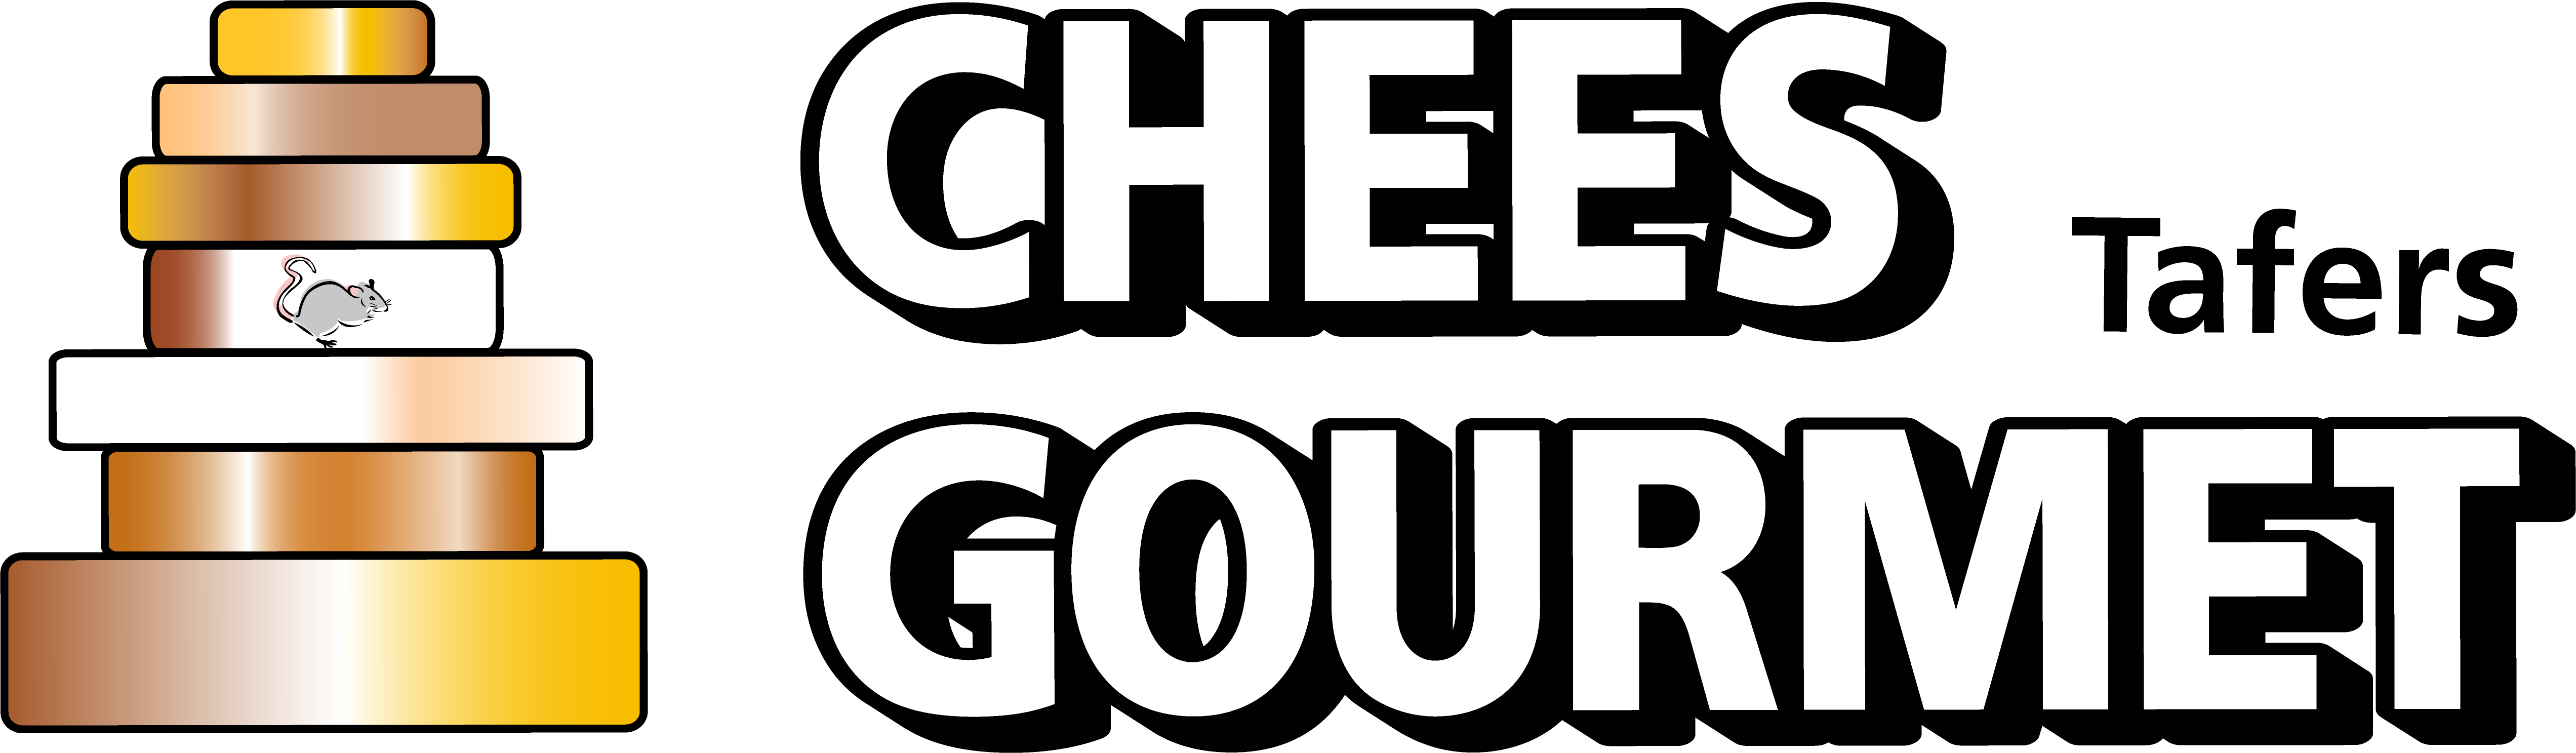 Logo_Chees_Gourmet